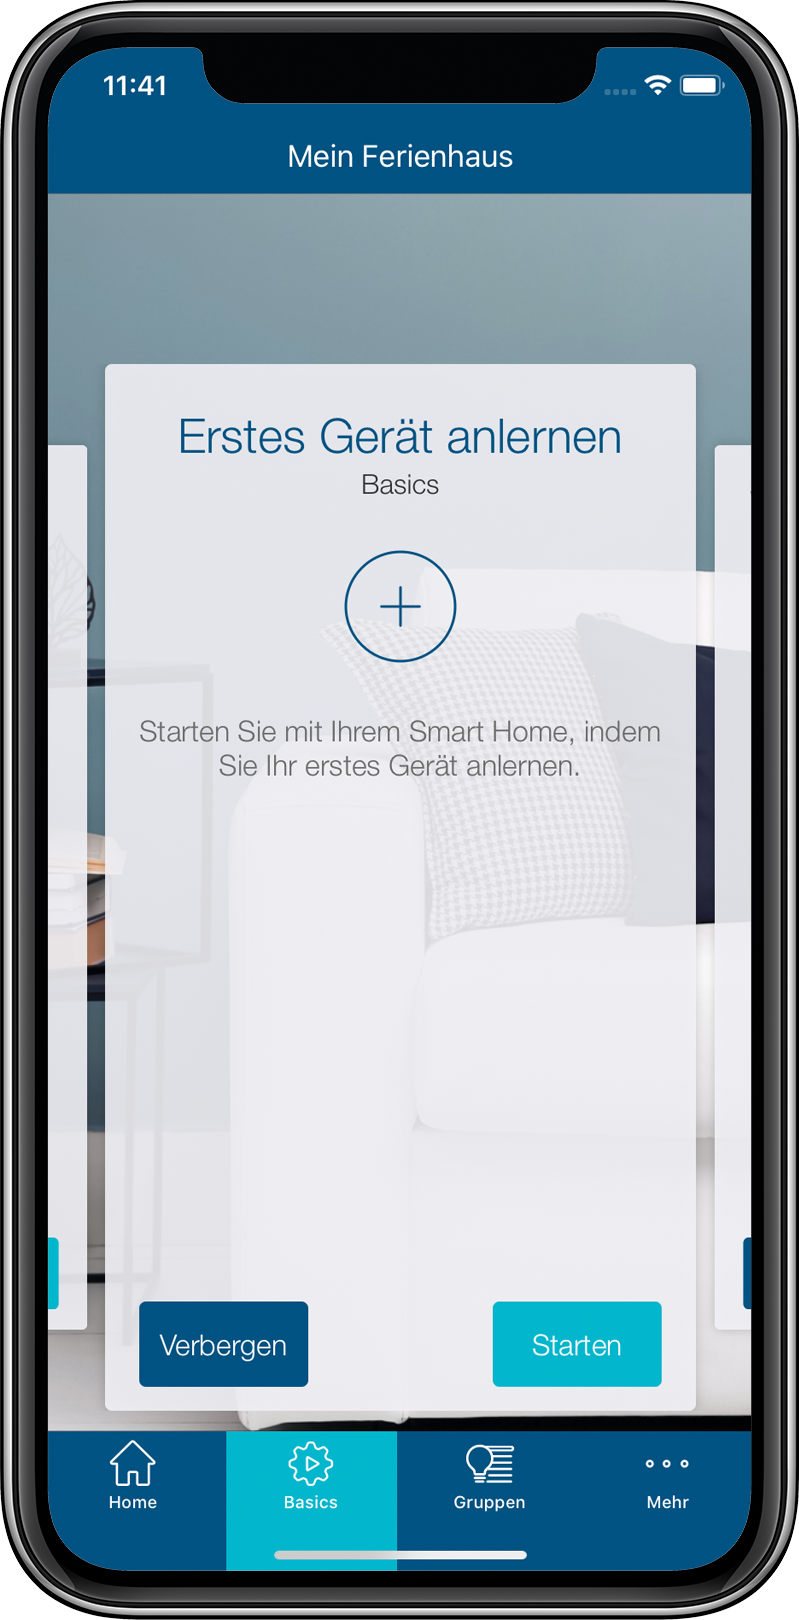 Homematic IP Smart-Home Starter-Set »Starter Set Heizen (156537A0)«